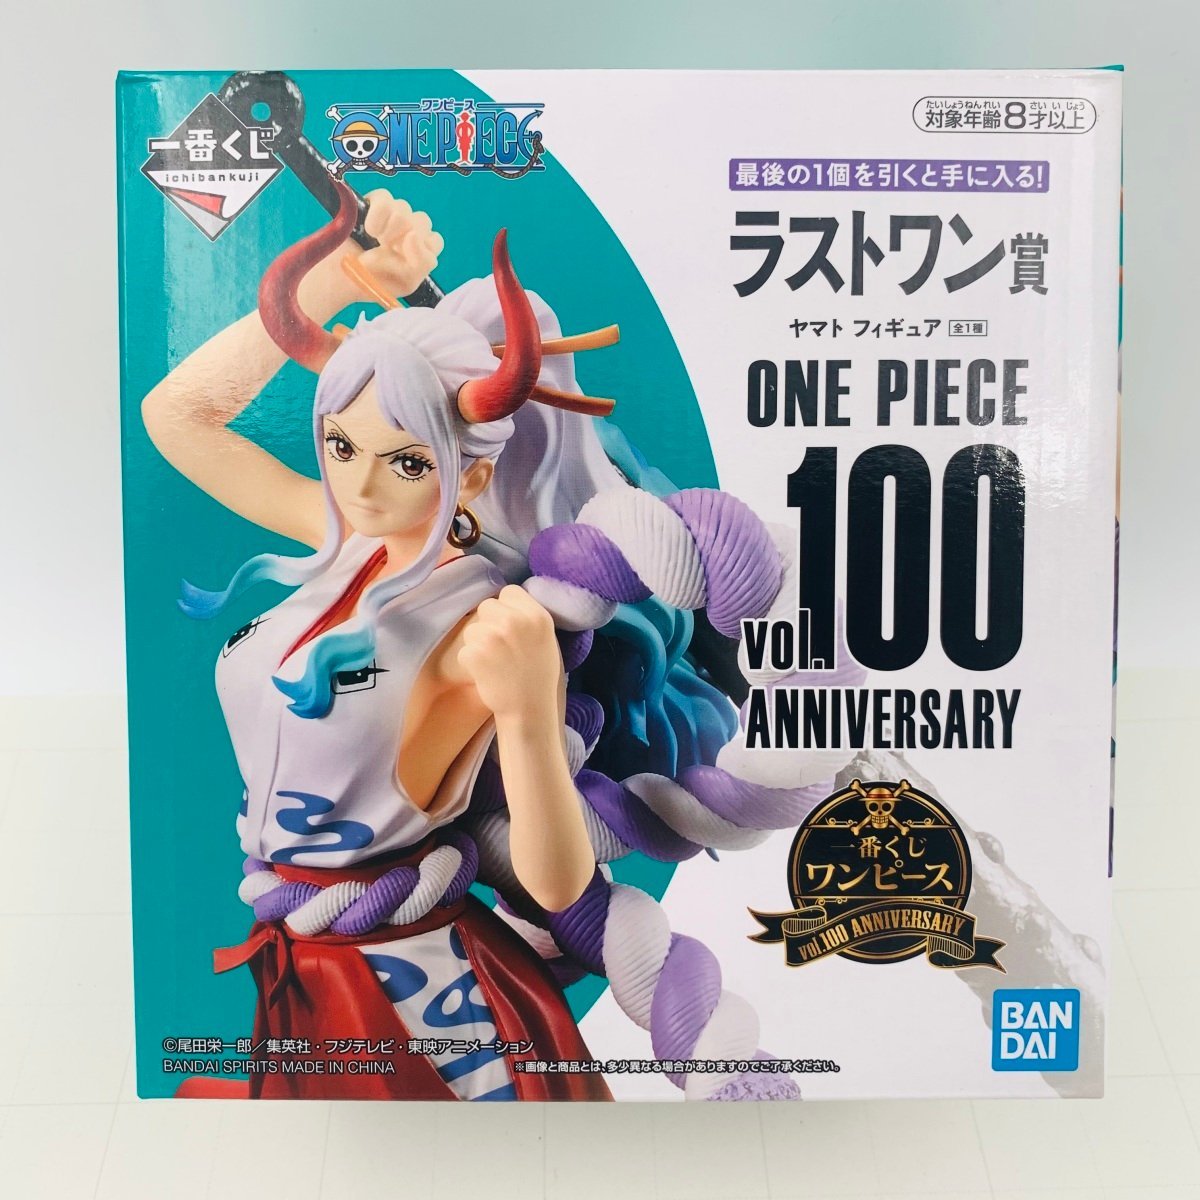 新品未開封★一番くじ ワンピース vol 100 Anniversary